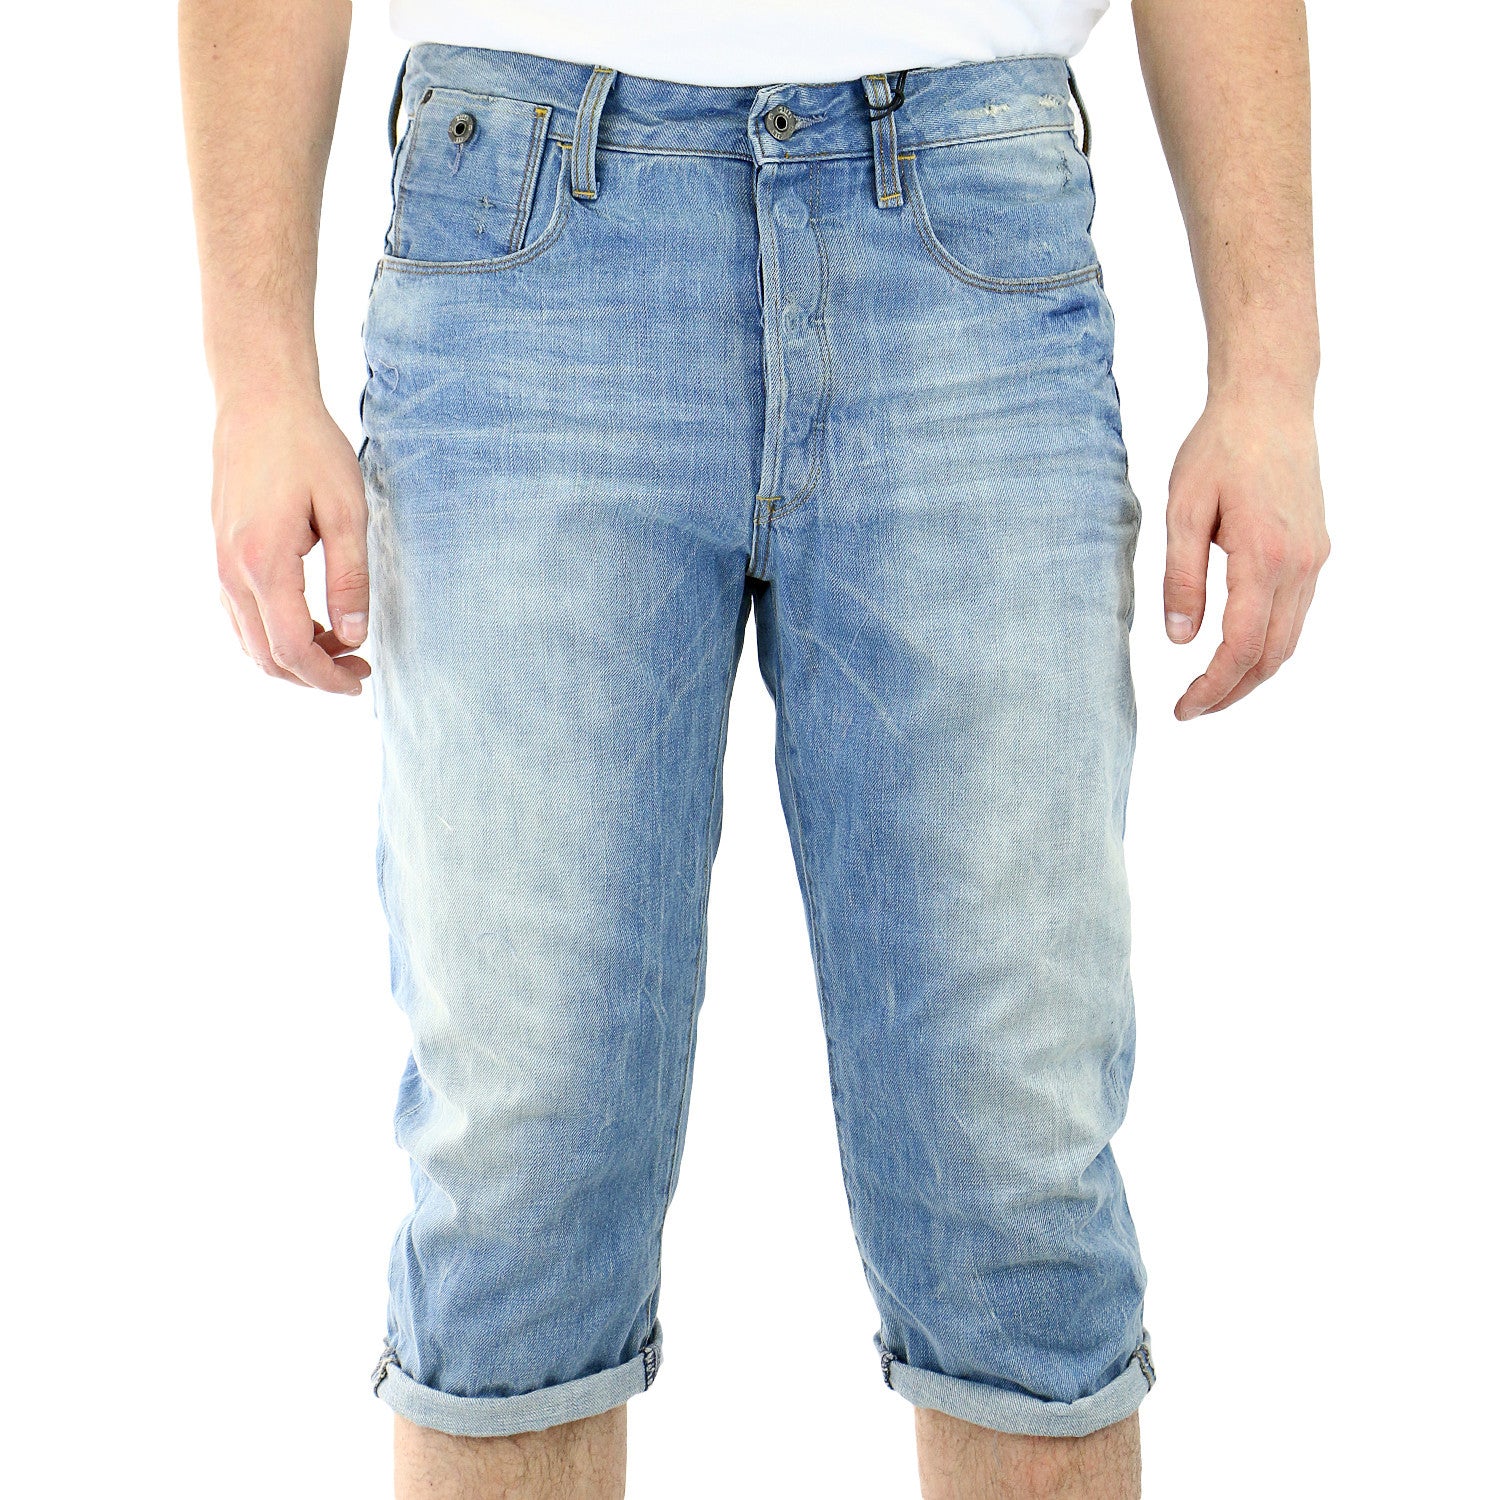 3 quarter length jeans mens